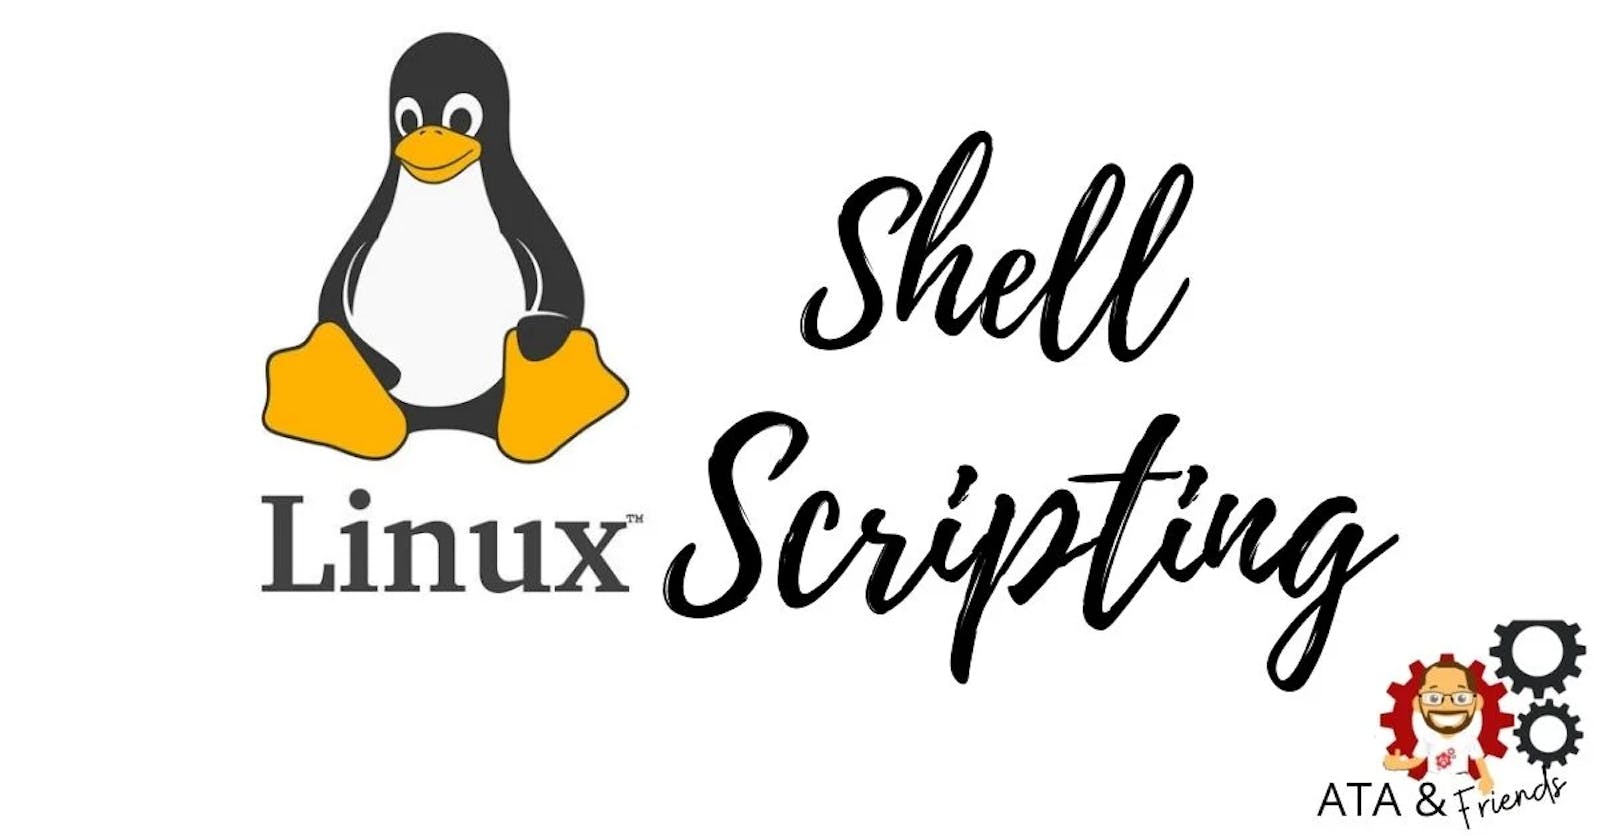 掌握shell脚本编程 进阶Linux高手